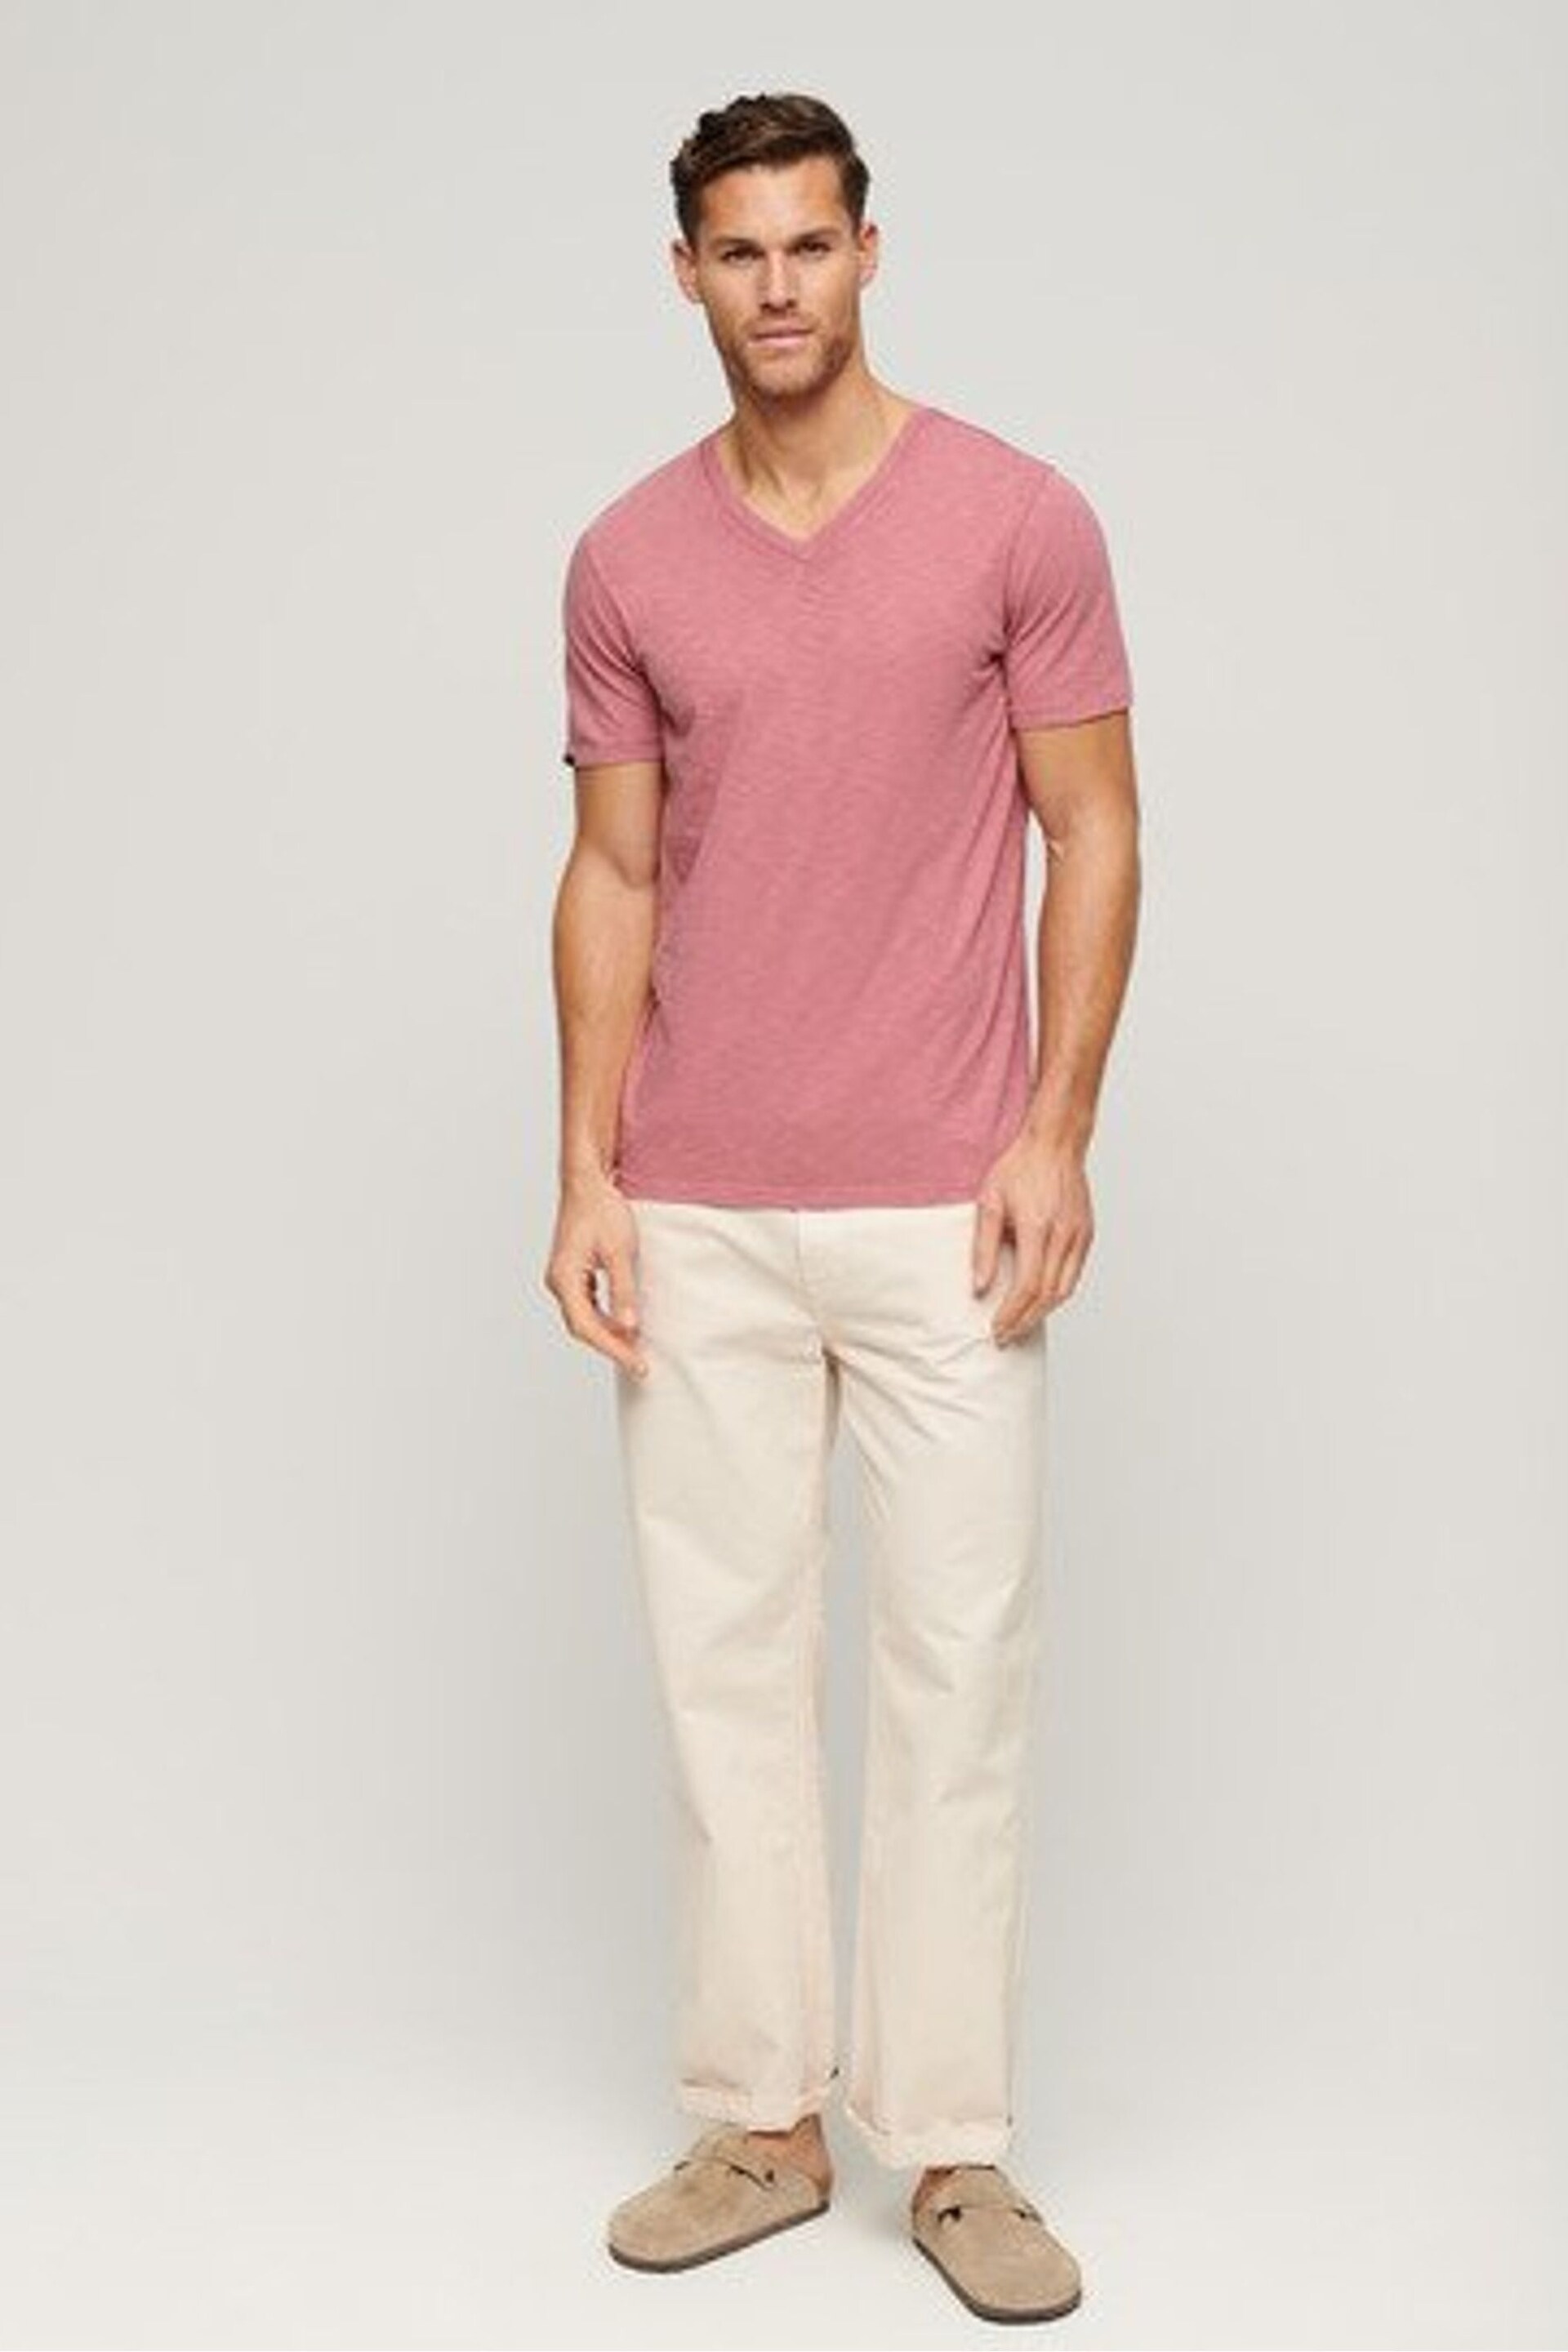 Superdry Pink Superdry V-Neck Slub Short Sleeve T-Shirt - Image 2 of 6